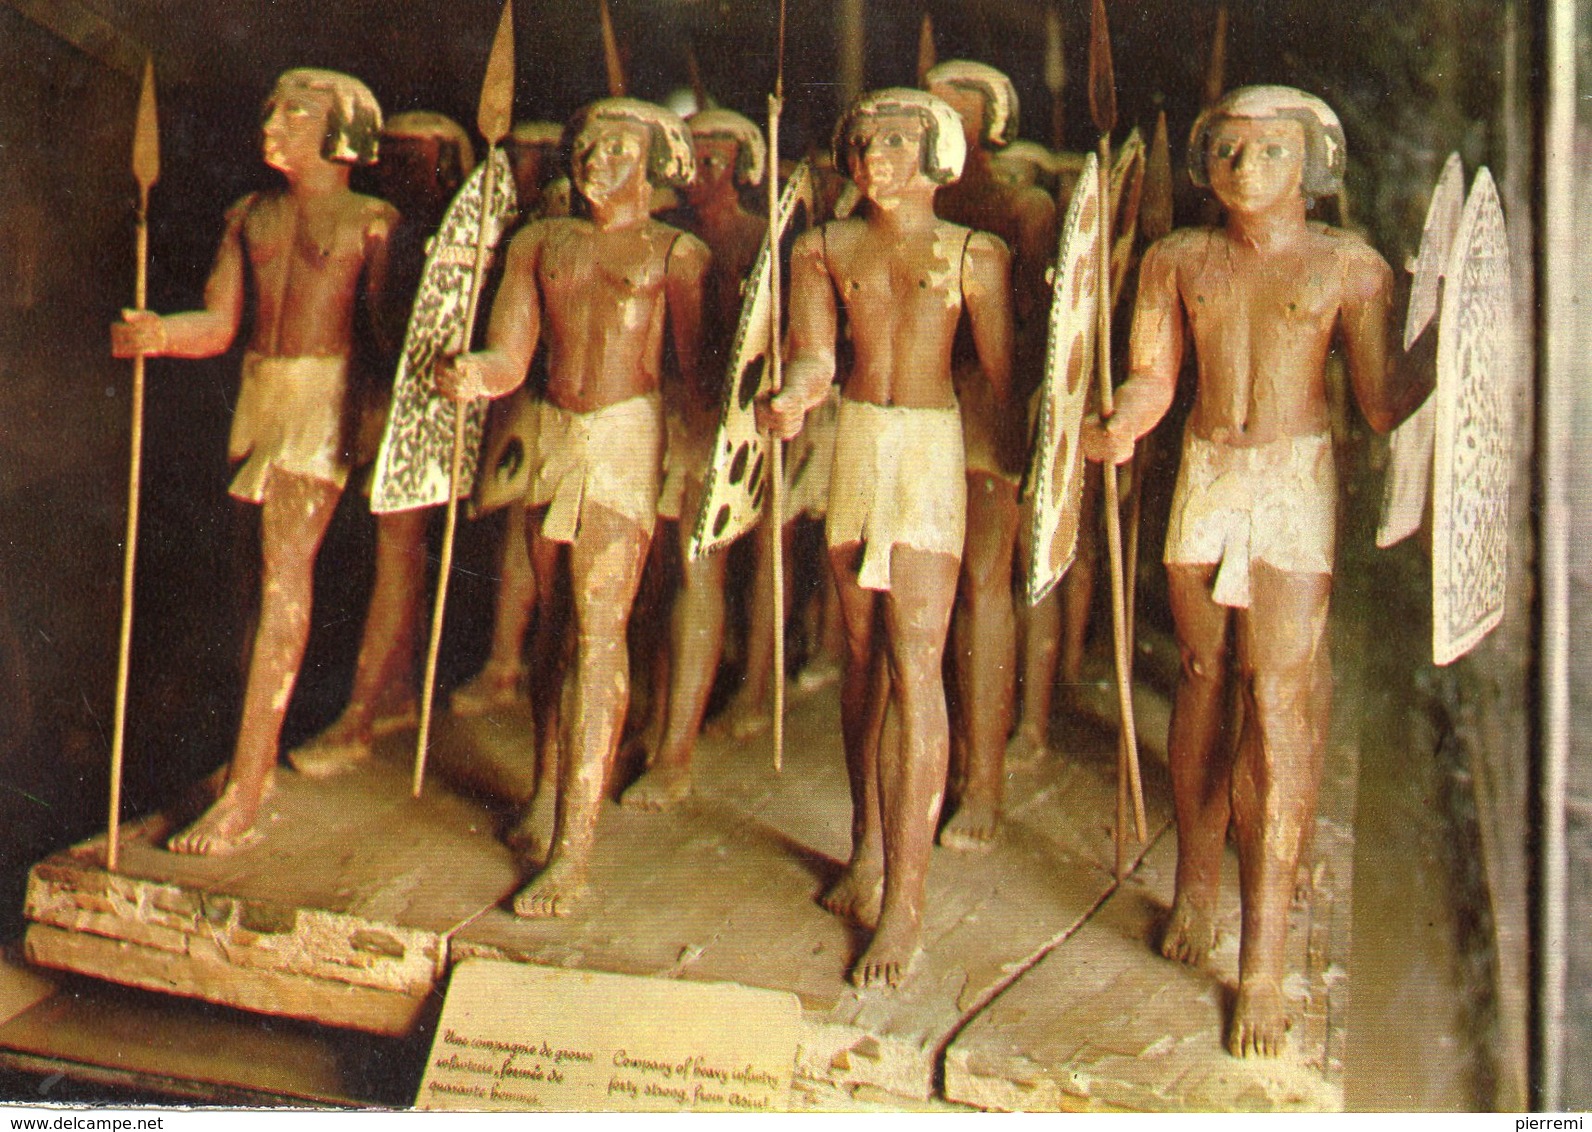 Musee Du Caire...soldats Nubiens - Musei